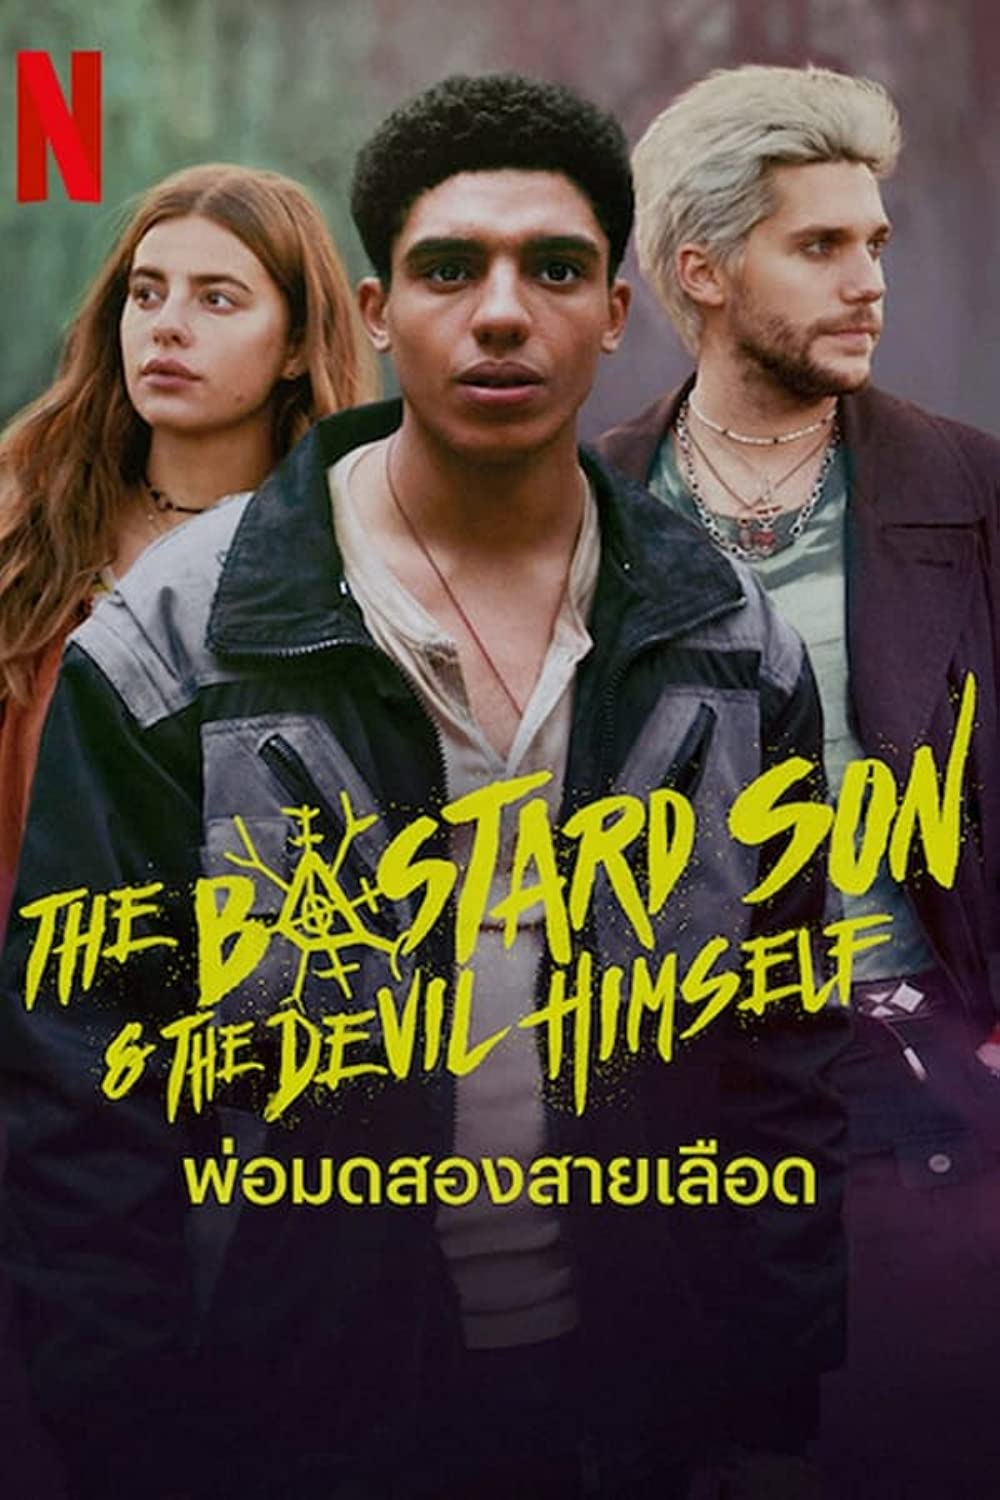 مسلسل The Bastard Son & The Devil Himself الموسم 1 الحلقة 3 مترجمة